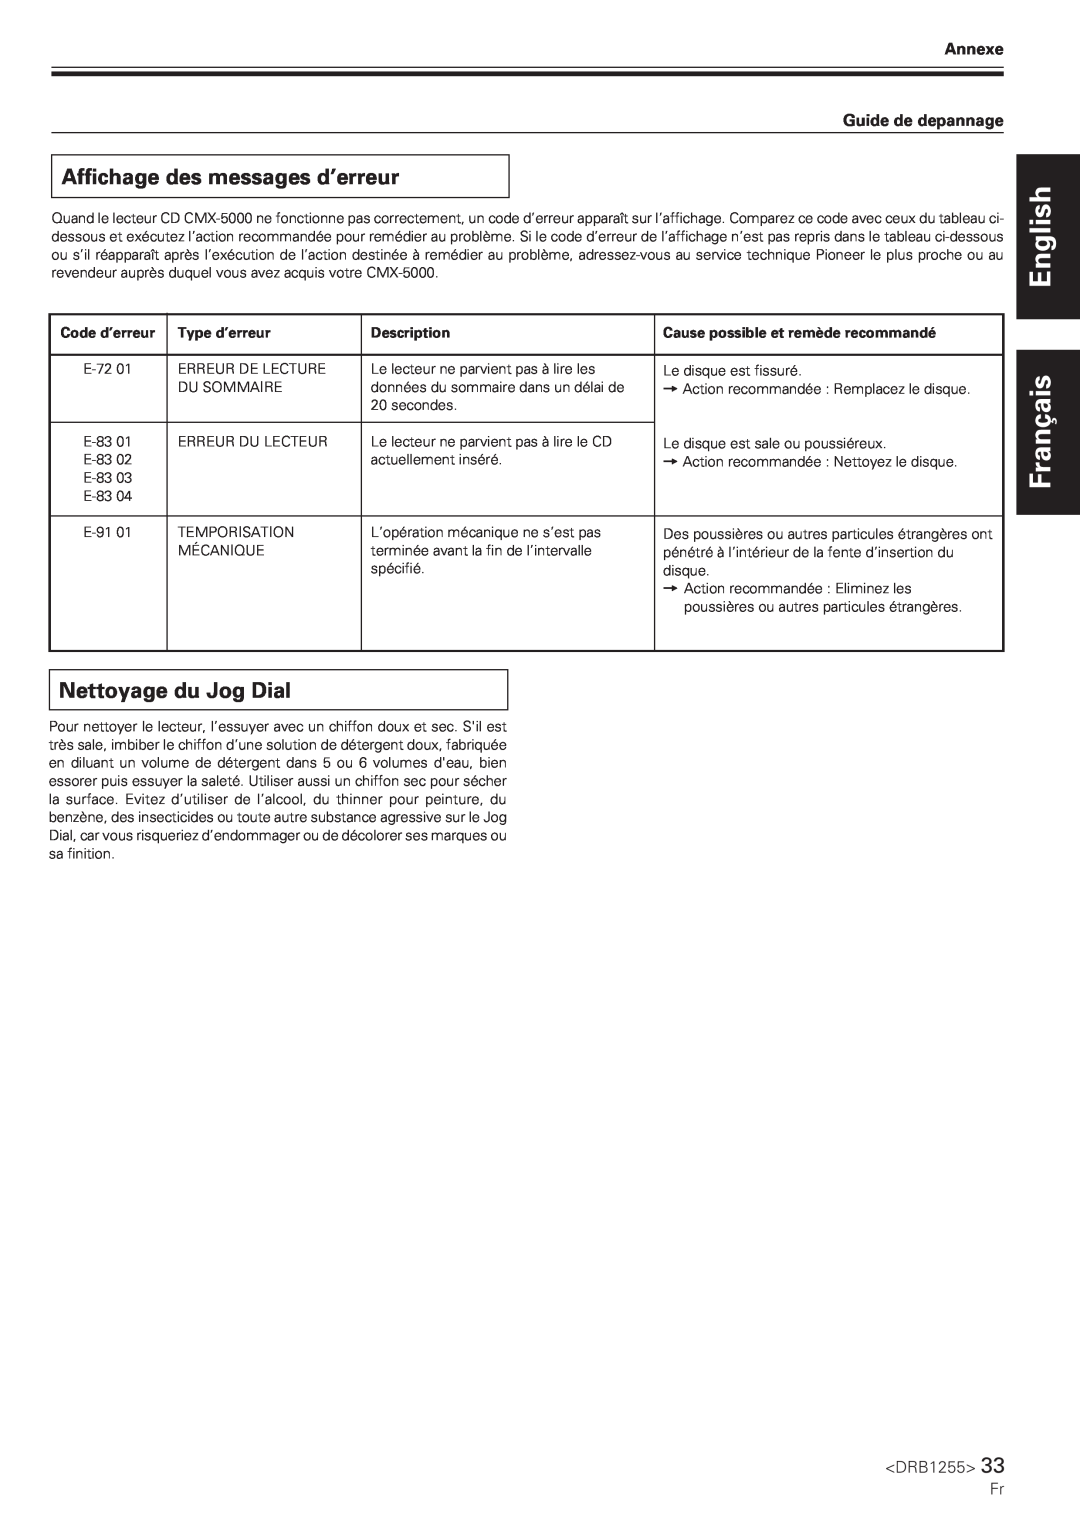 Pioneer CMX-5000 manual Affichage des messages d’erreur, Nettoyage du Jog Dial, English Français, Annexe Guide de depannage 